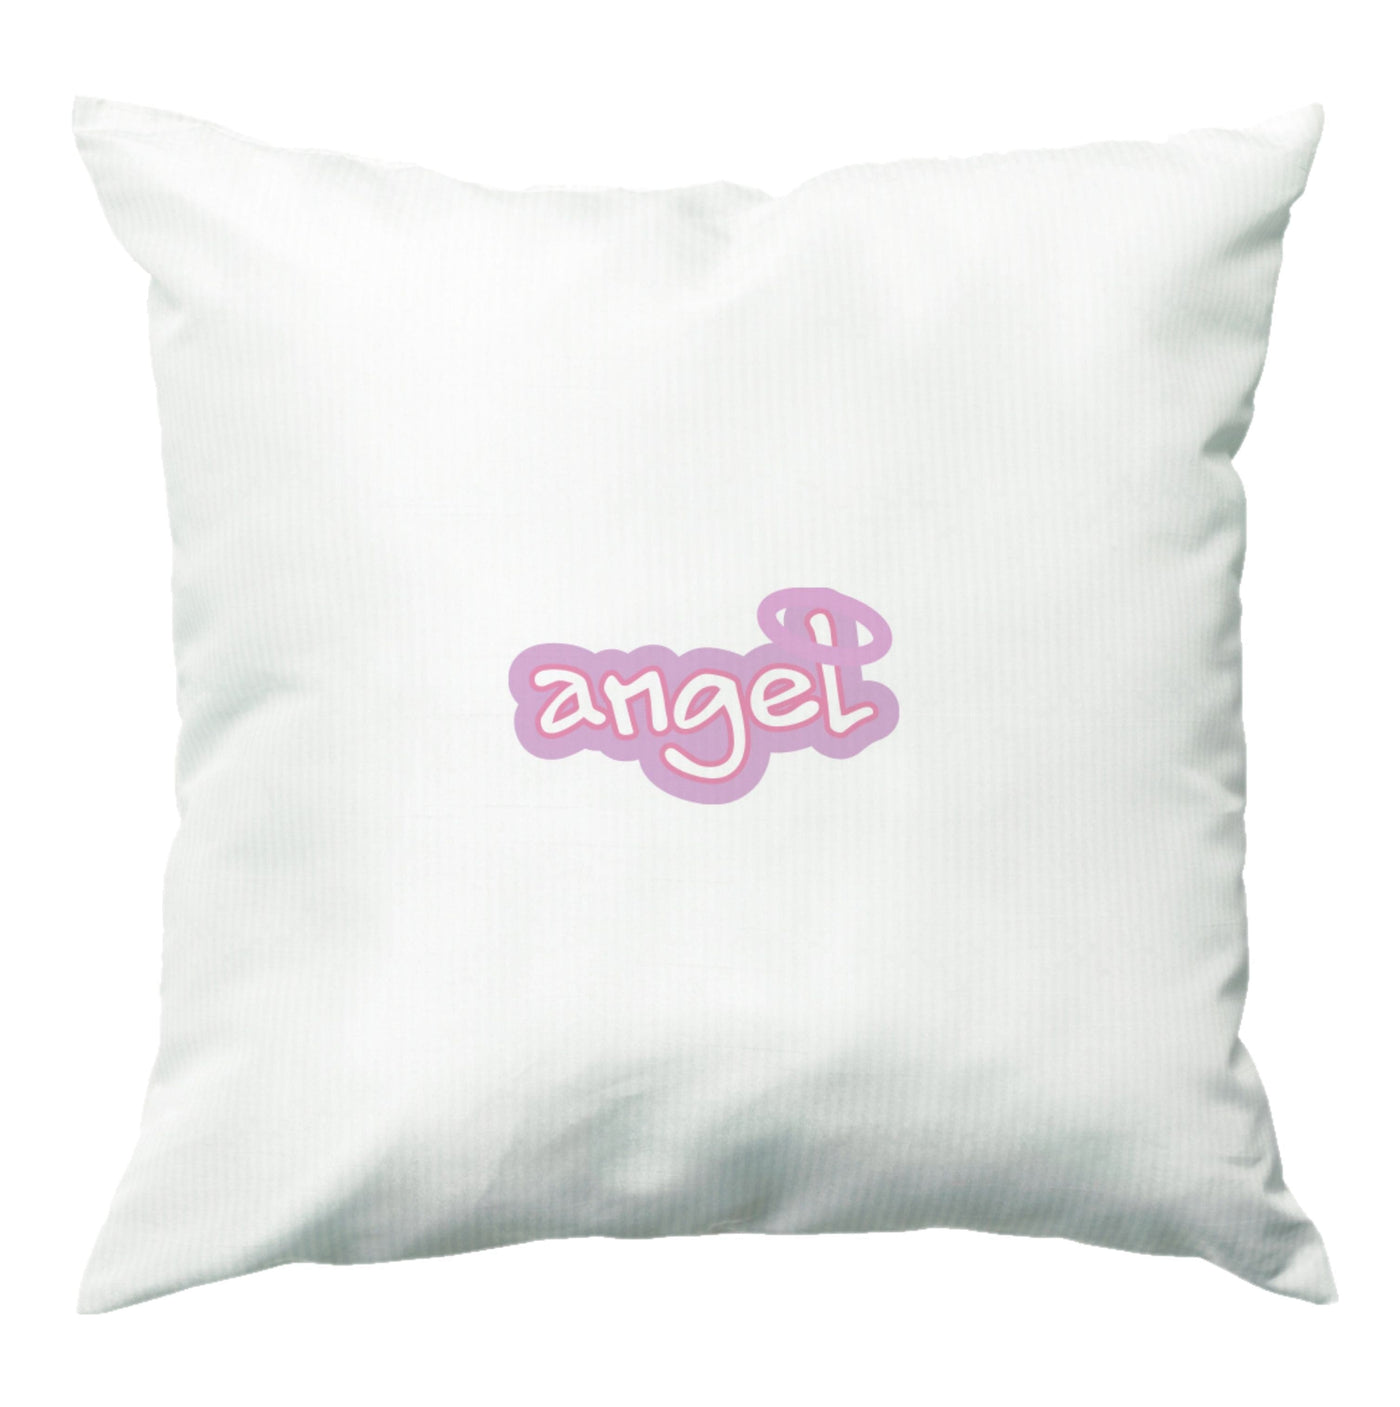 Angel - Loren Gray Cushion